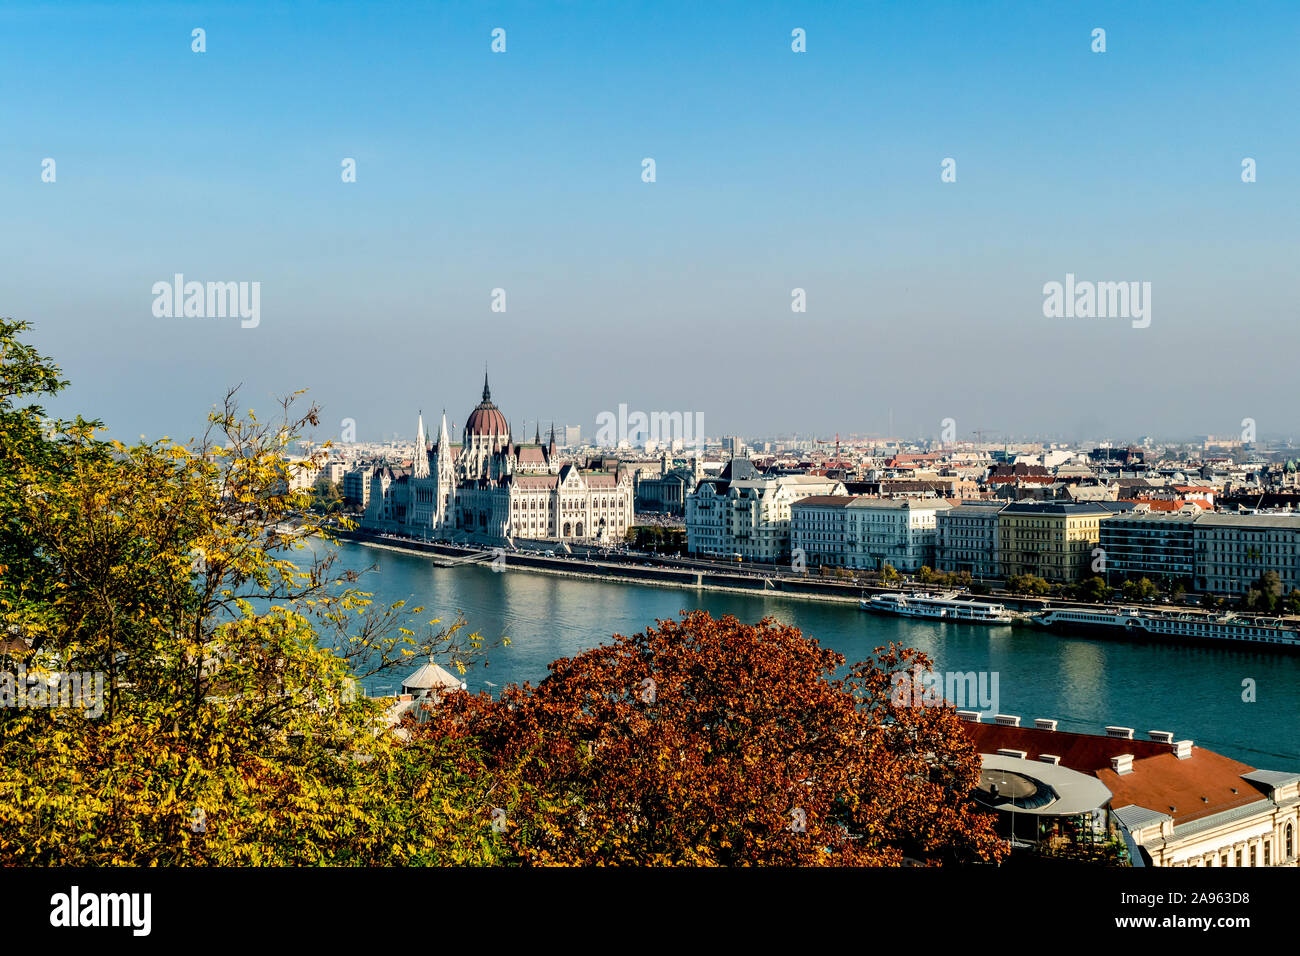 Ein Blick auf die Pest über die Donau vom Castle Hill, Buda, zeigt das Parlamentsgebäude und die Kuppel der Kathedrale. in Budapest, Ungarn. Stockfoto